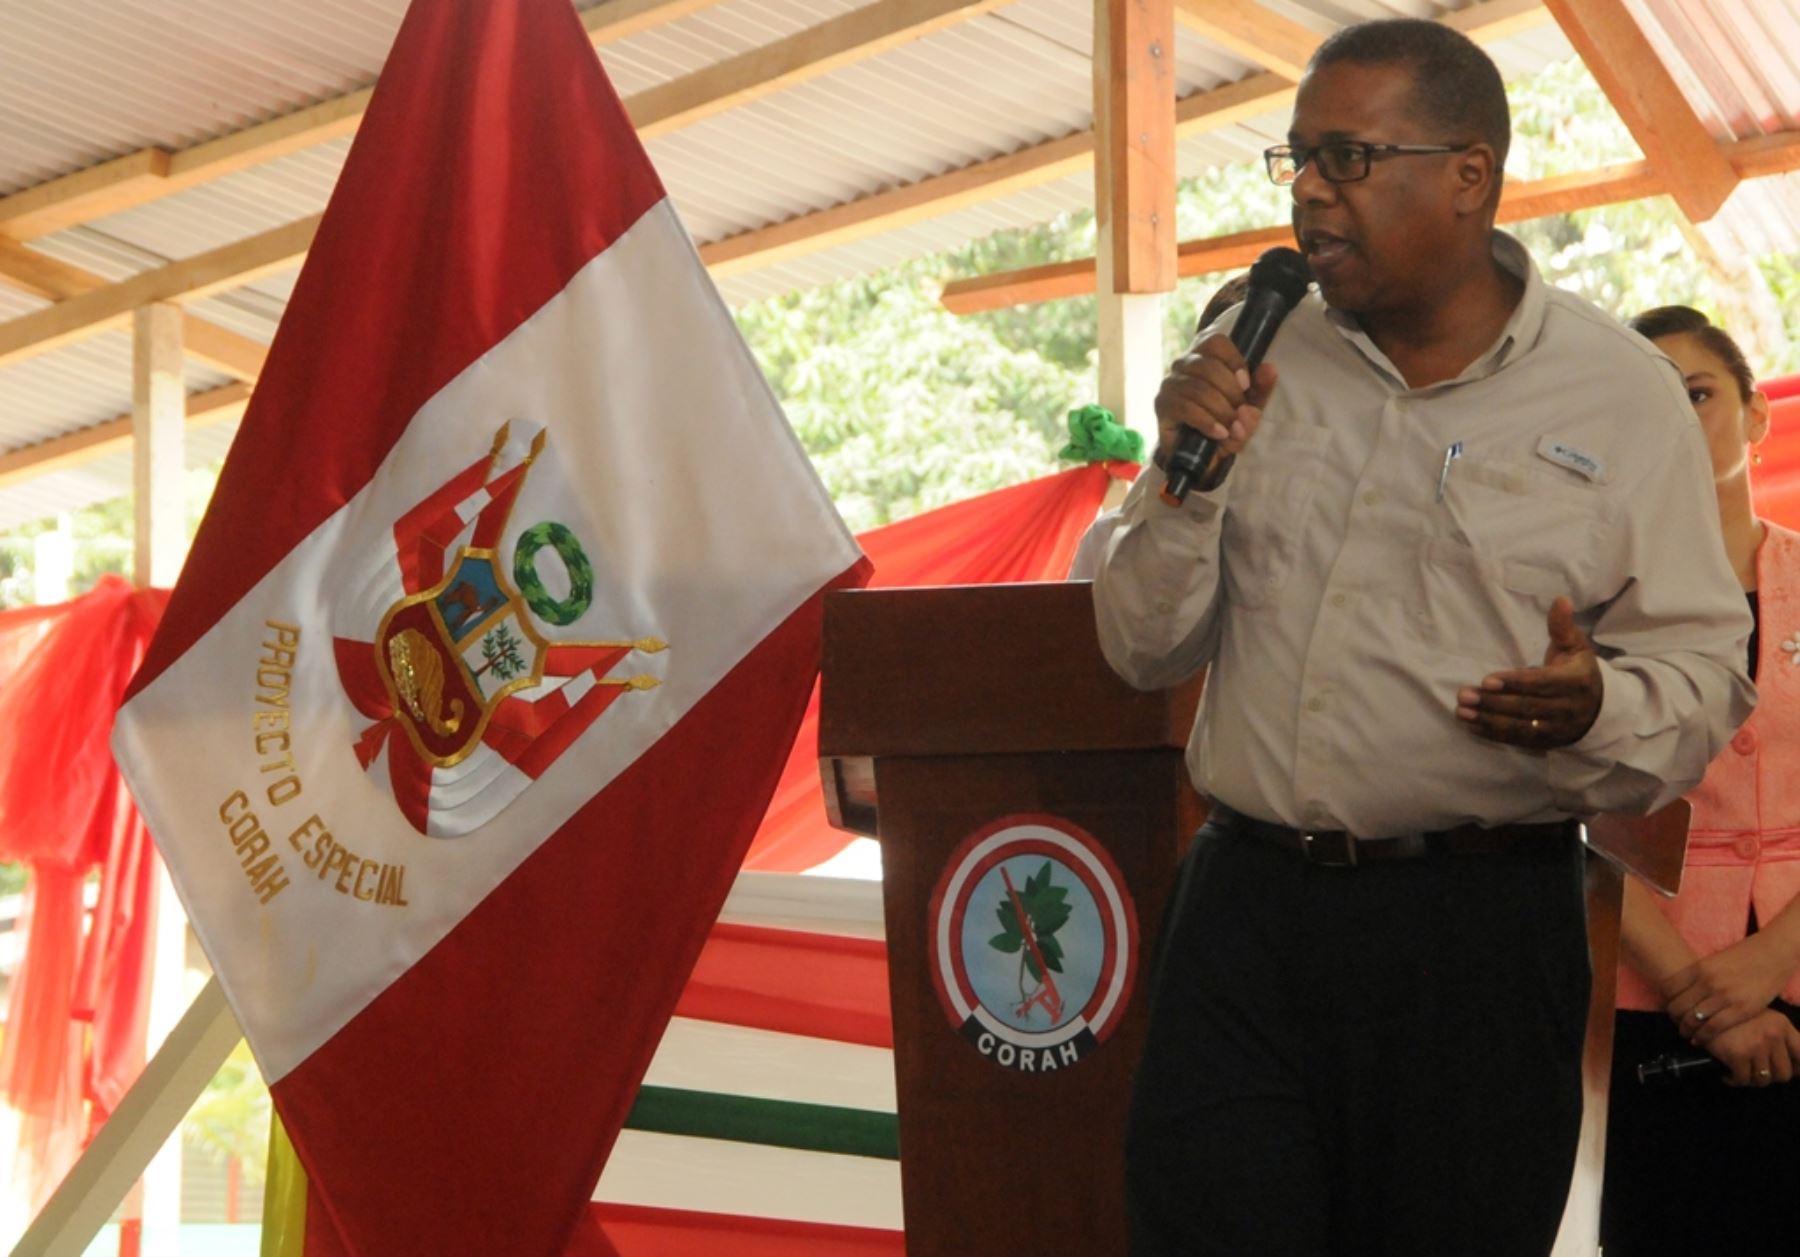 El embajador de Estados Unidos en Lima, Brian A. Nichols,participa en la clausura anual de las labores de erradicación de cultivos ilegales de coca, en la ciudad de Pucallpa, región Ucayali. Difusión